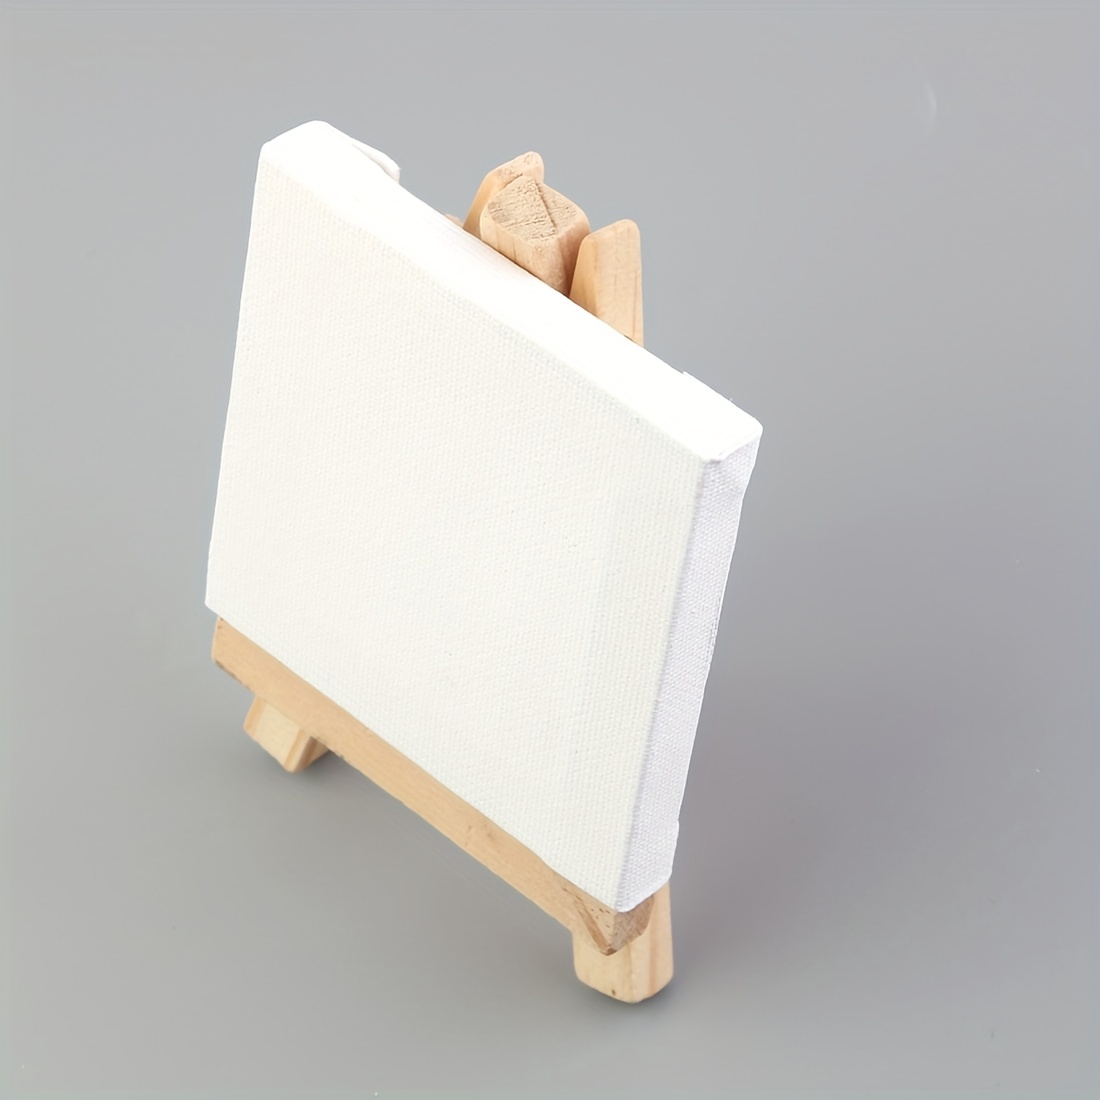 Mini Canvas And Easel Set Mini Canvas Panels Mini Wood - Temu